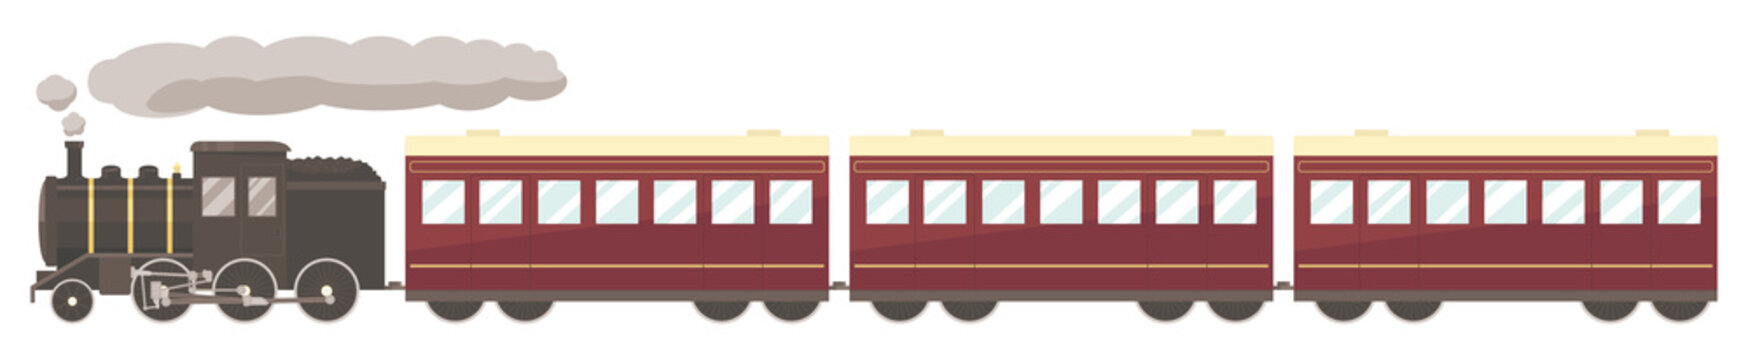 蒸気機関車と客車